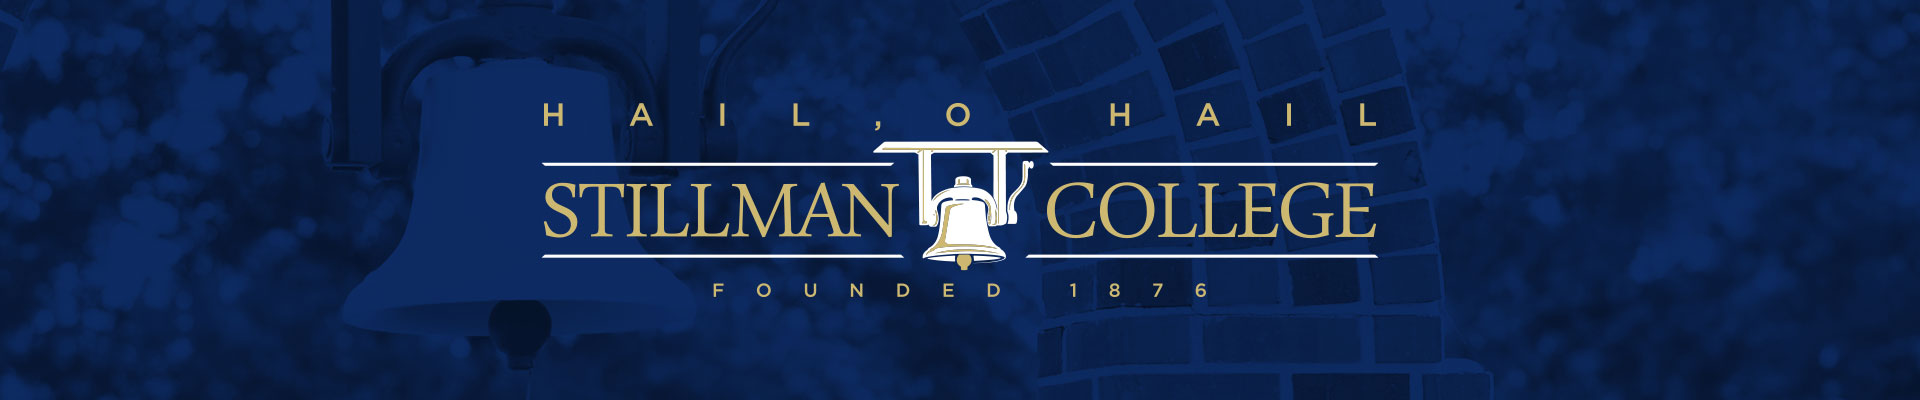 stillman college logo blue